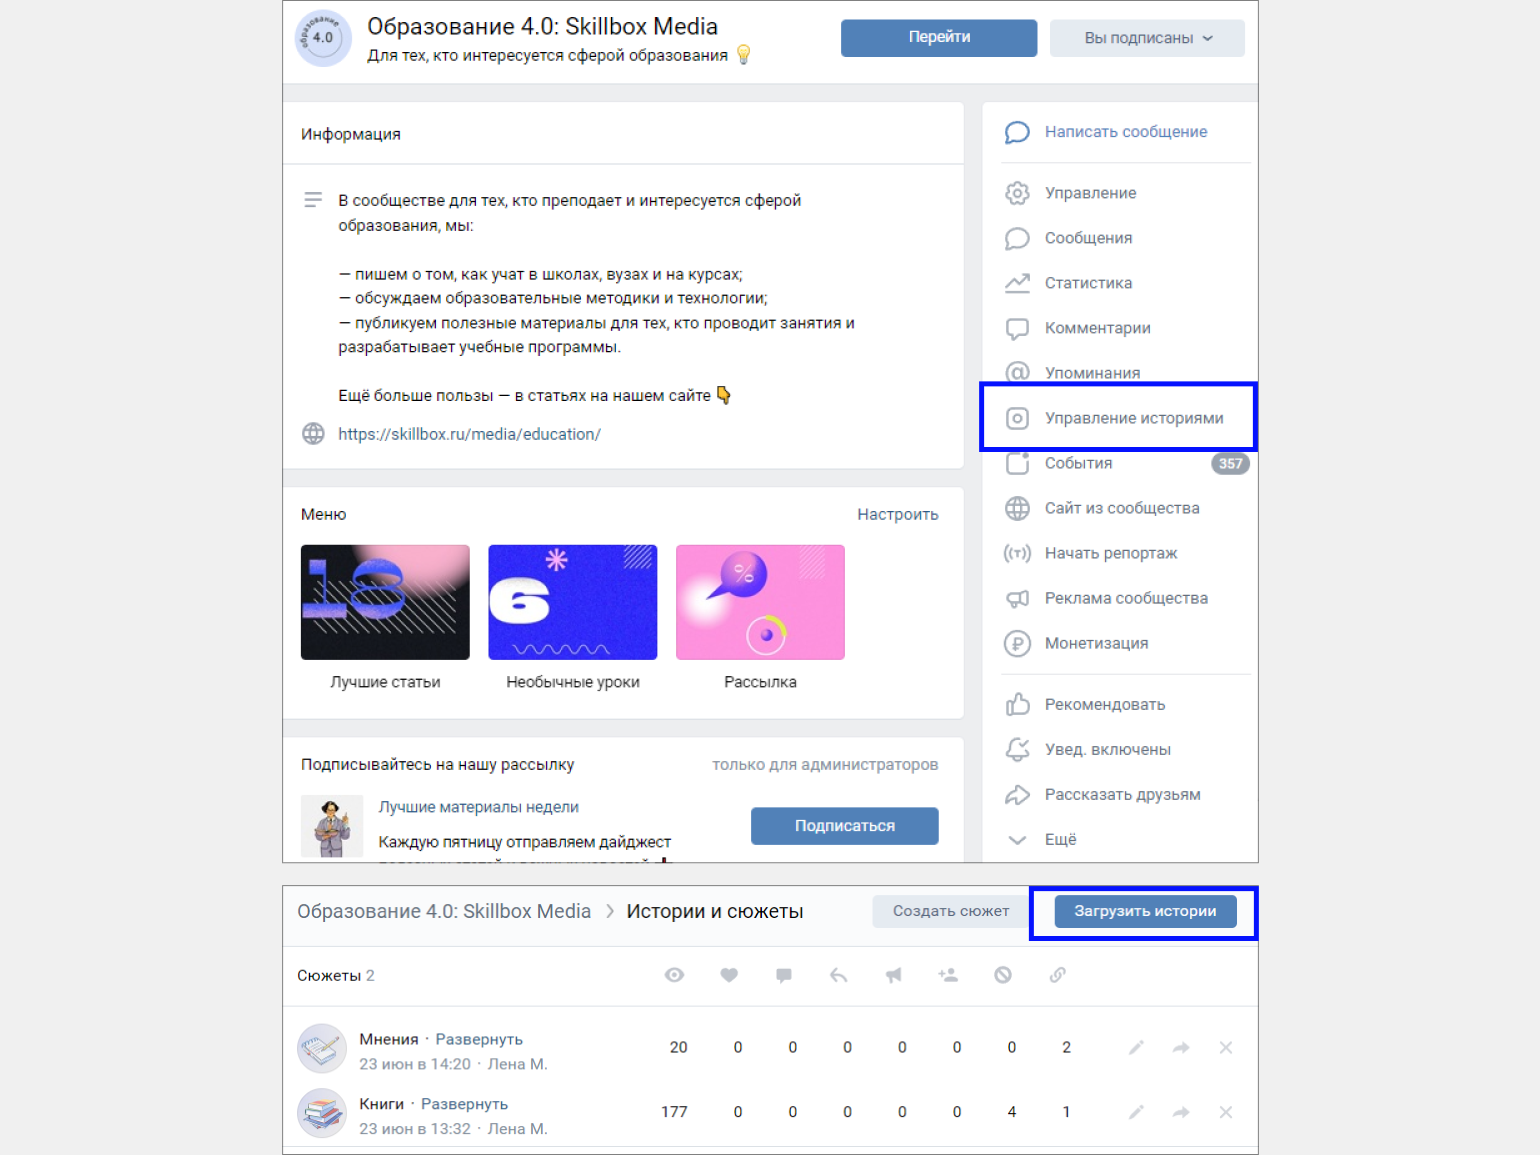 Как сделать репост: Одноклассники и ВКонтакте